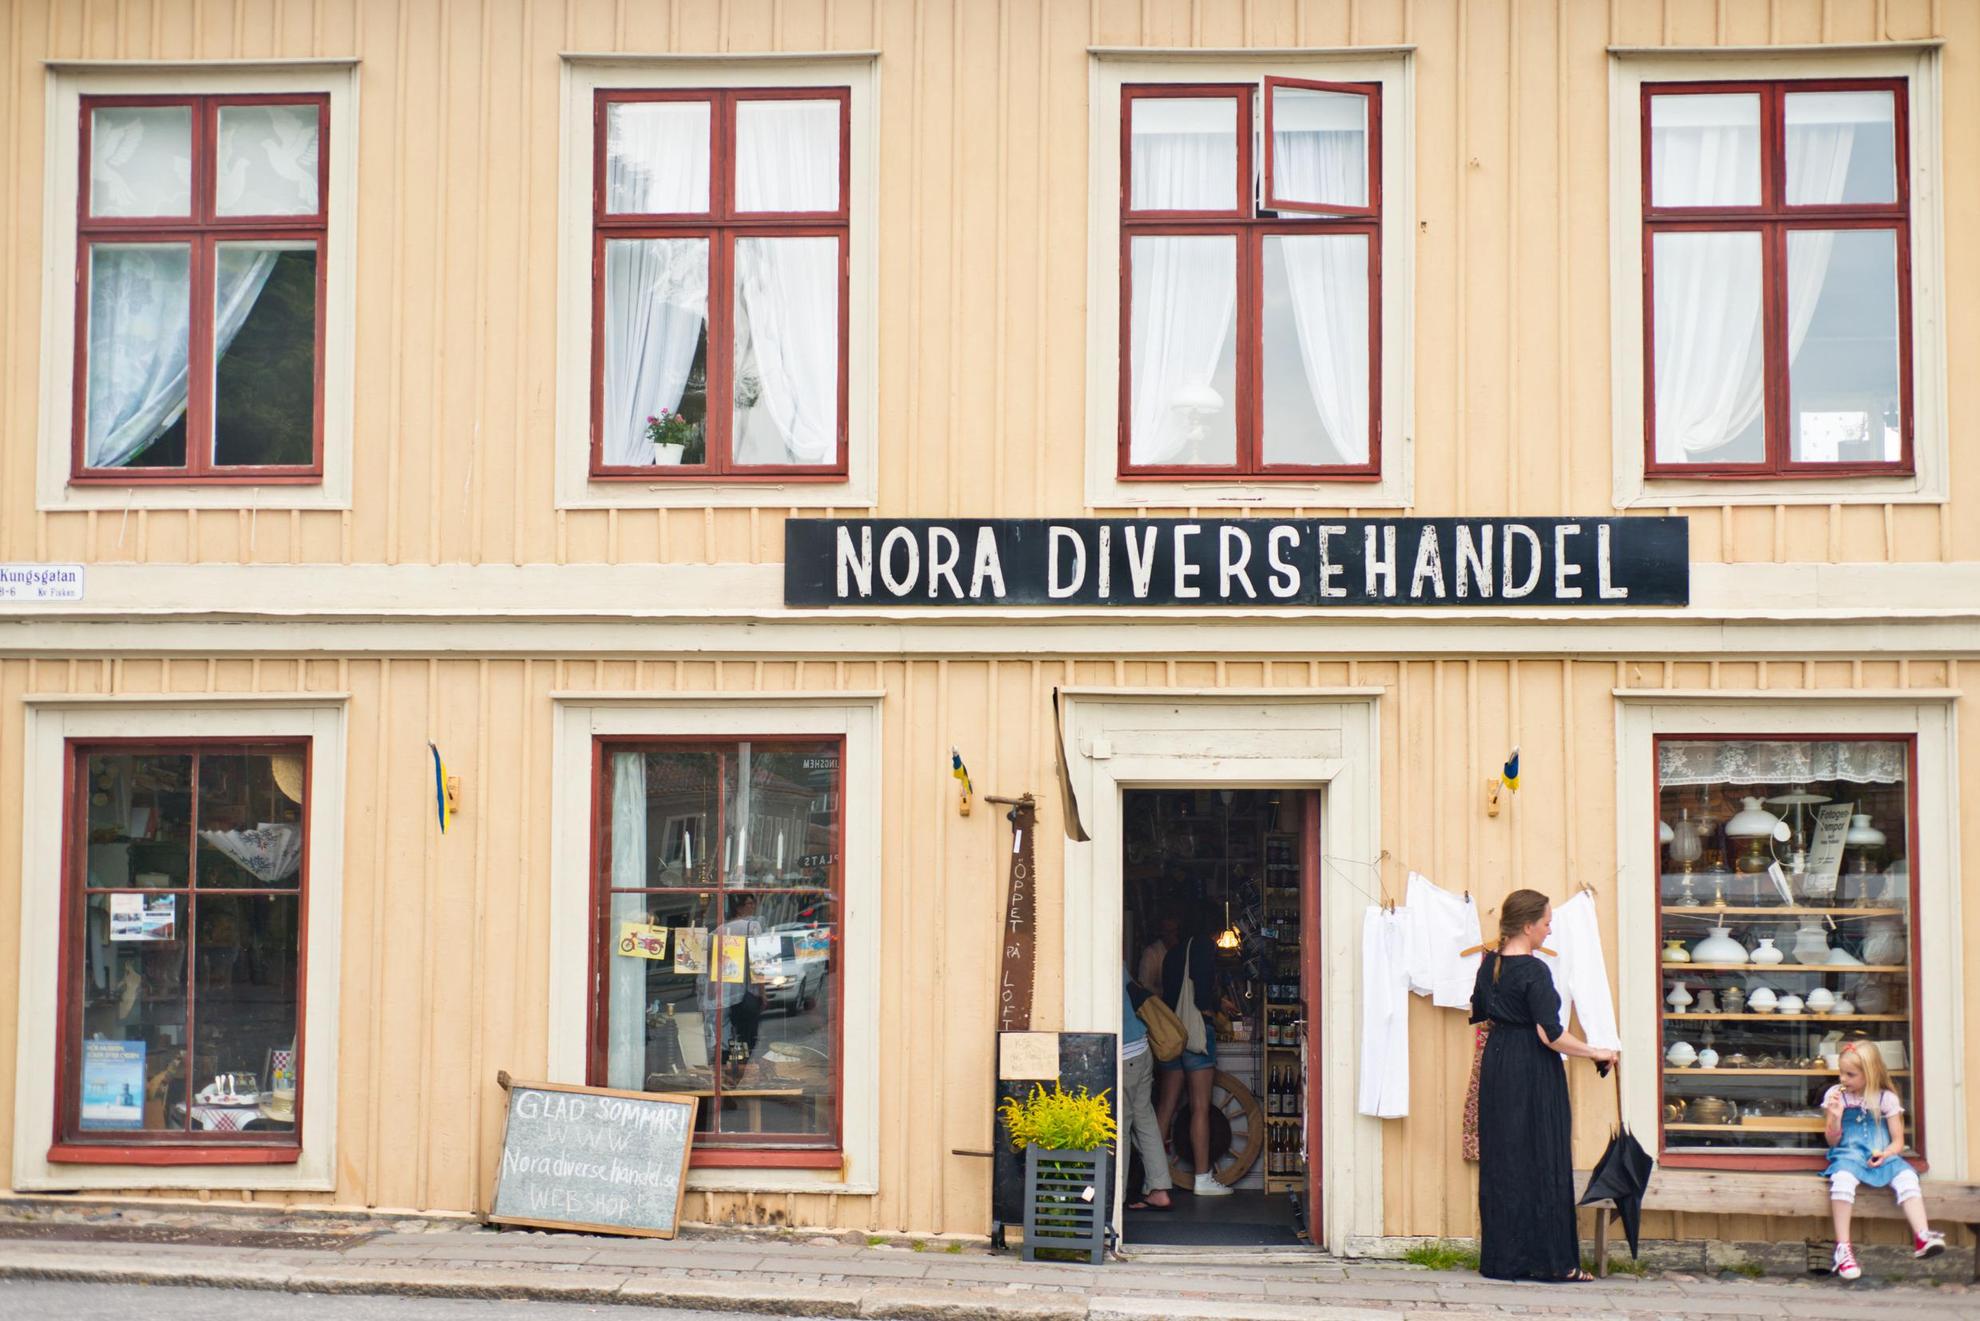 Ein kleiner Laden in einem gelben Holzhaus an einer Straße in einer Altstadt. Auf einem Schild über dem Eingang steht Nora Diversehandel. Eine Frau steht und ein Mädchen sitzt auf einer Bank vor dem Haus.